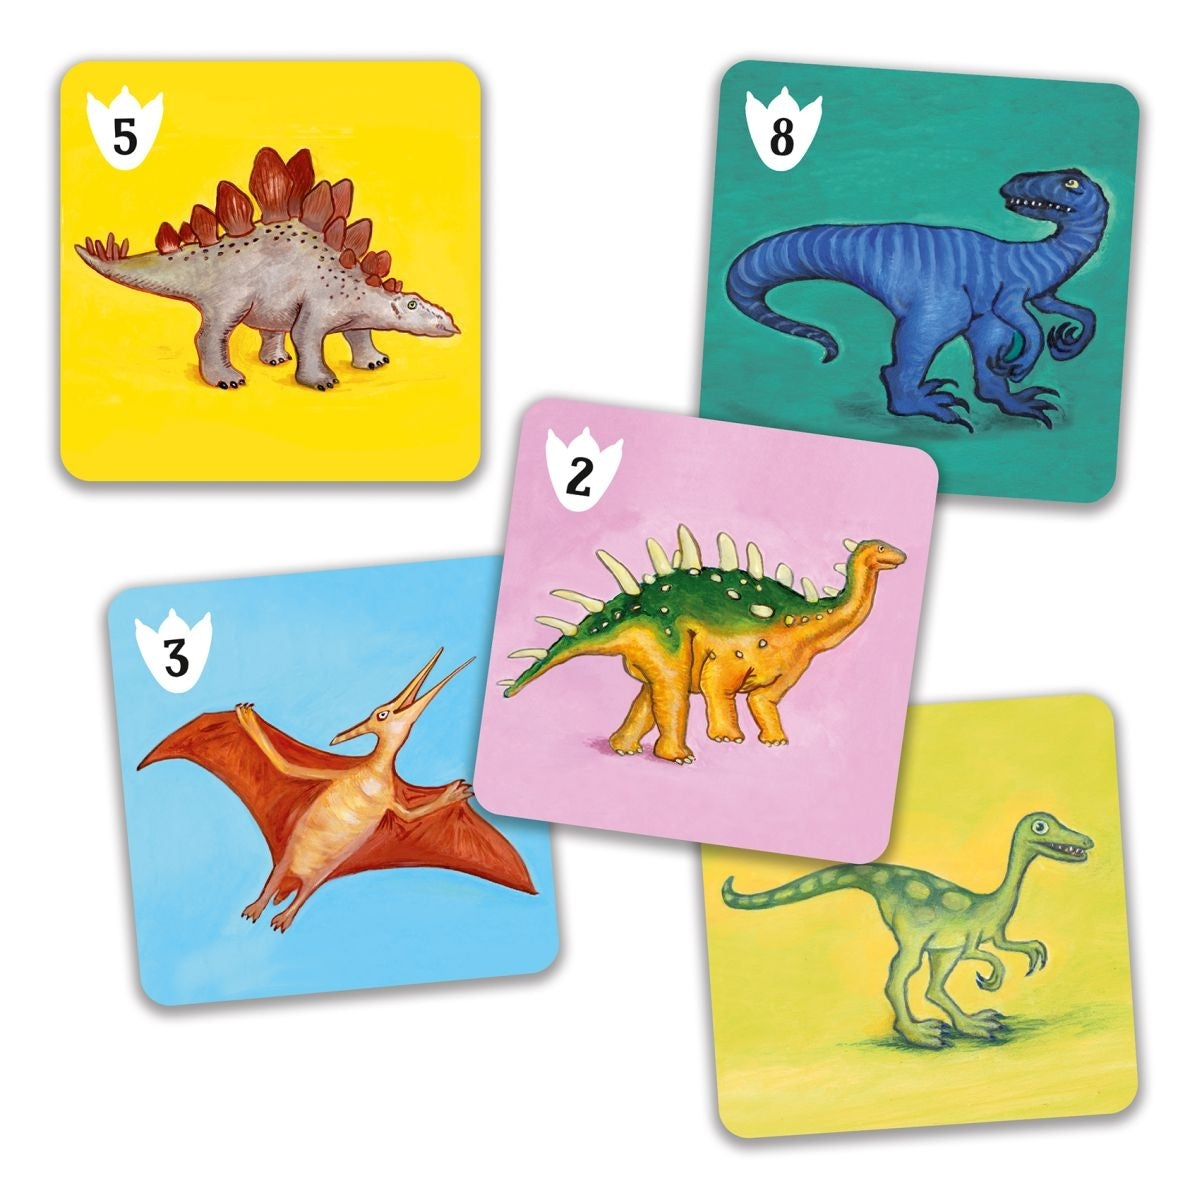 Dinosaurierattacken und Gegenangriffe ... Ein Spiel, bei dem Strategie und Gedächtnis gefragt sind. Die lustigen Dinosaurier erfreuen die ganze Familie. Beobachtung und Schnelligkeit, Taktik, Strategie, Konzentration